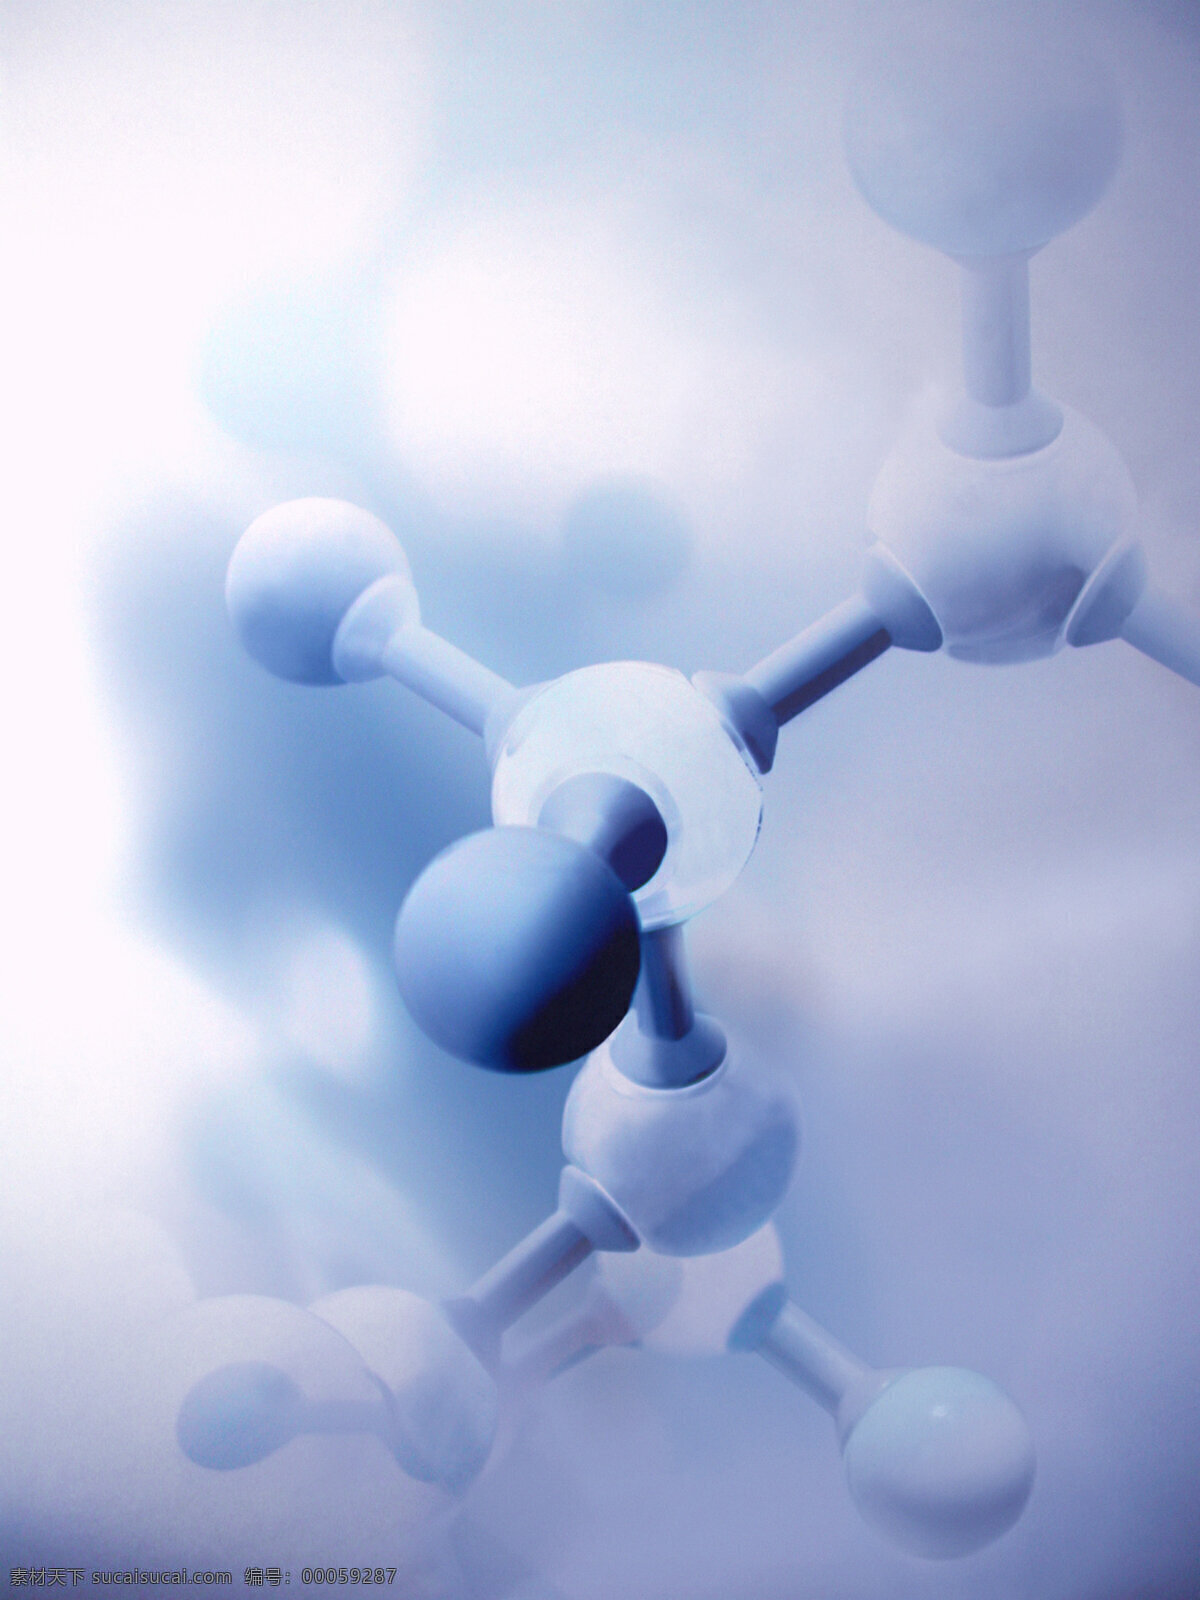 生命科学 分子 化学 科技背景 蓝色科技 现代科技 医学 分子链 医学背景 矢量图